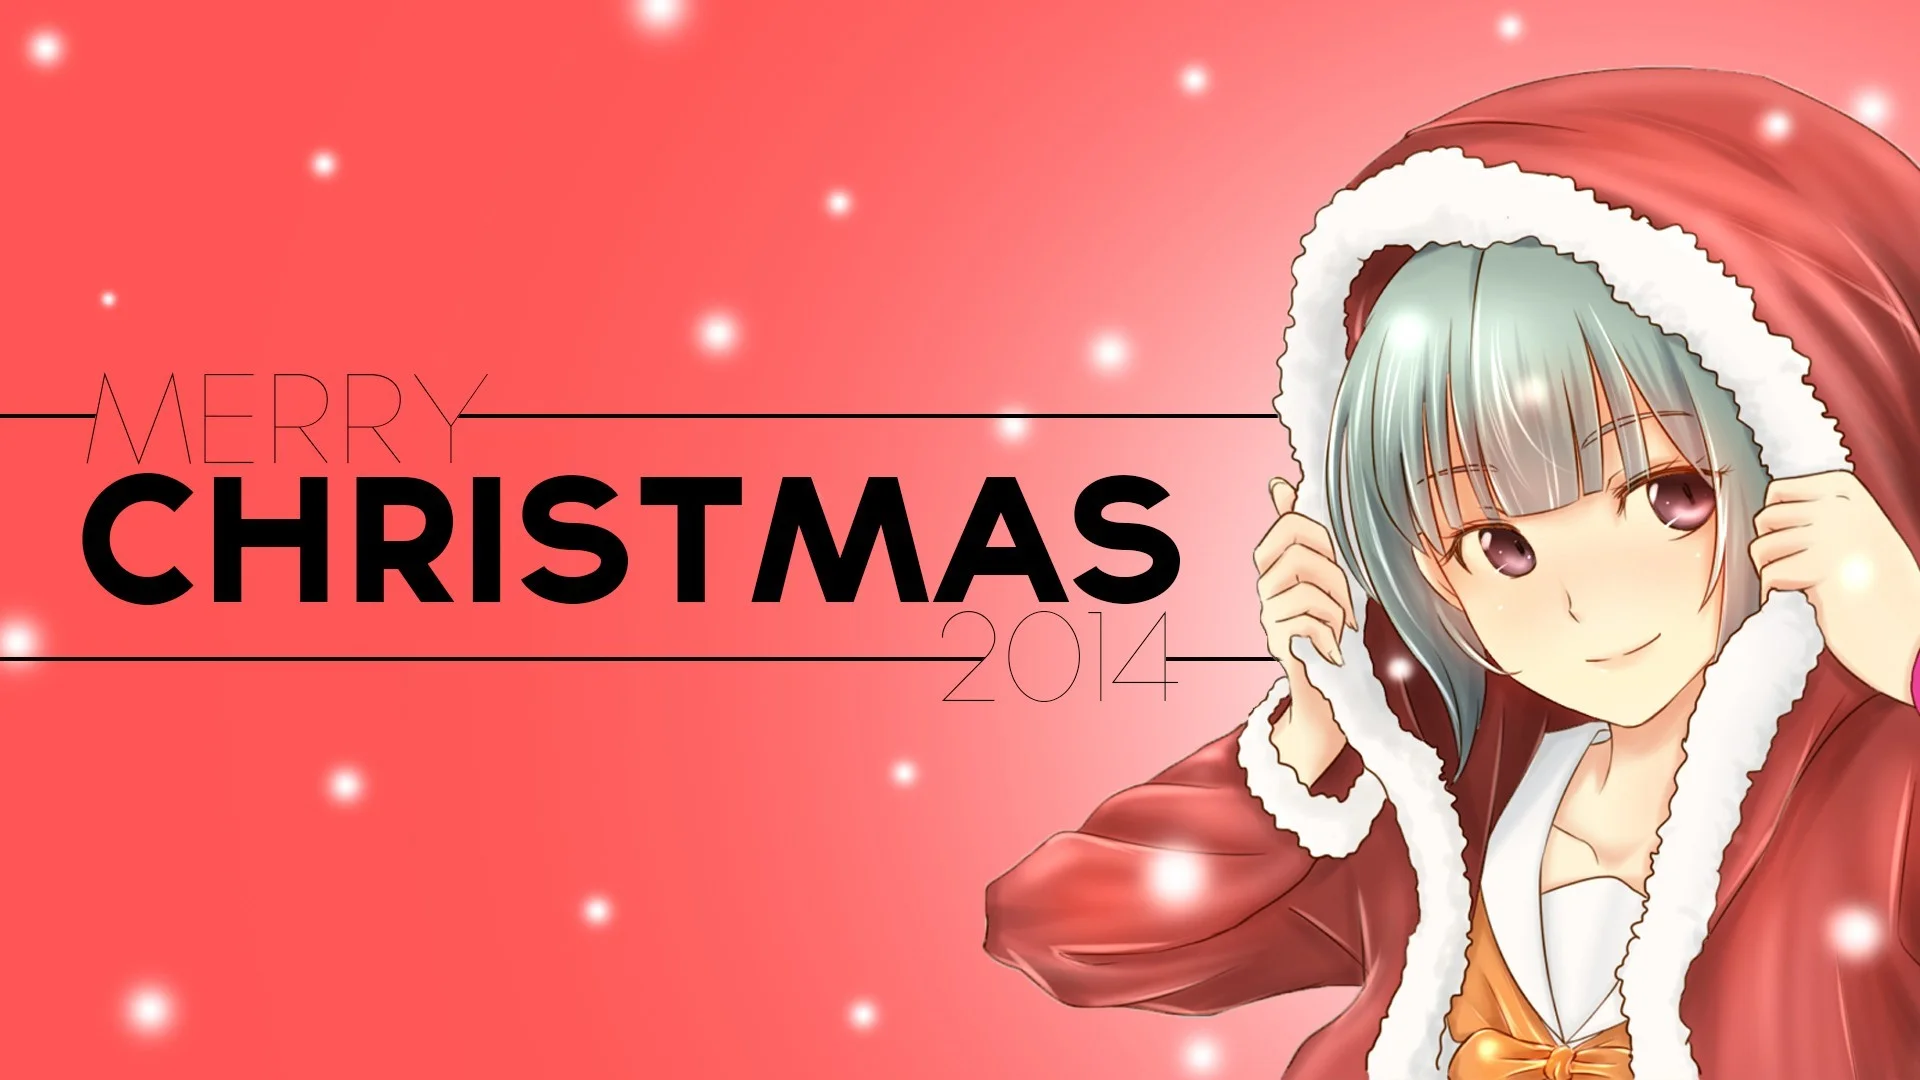 Christmas, Anime, Anime Girls, Kantai Collection, Yuubari KanColle Wallpapers HD / Desktop and Mobile Backgrounds